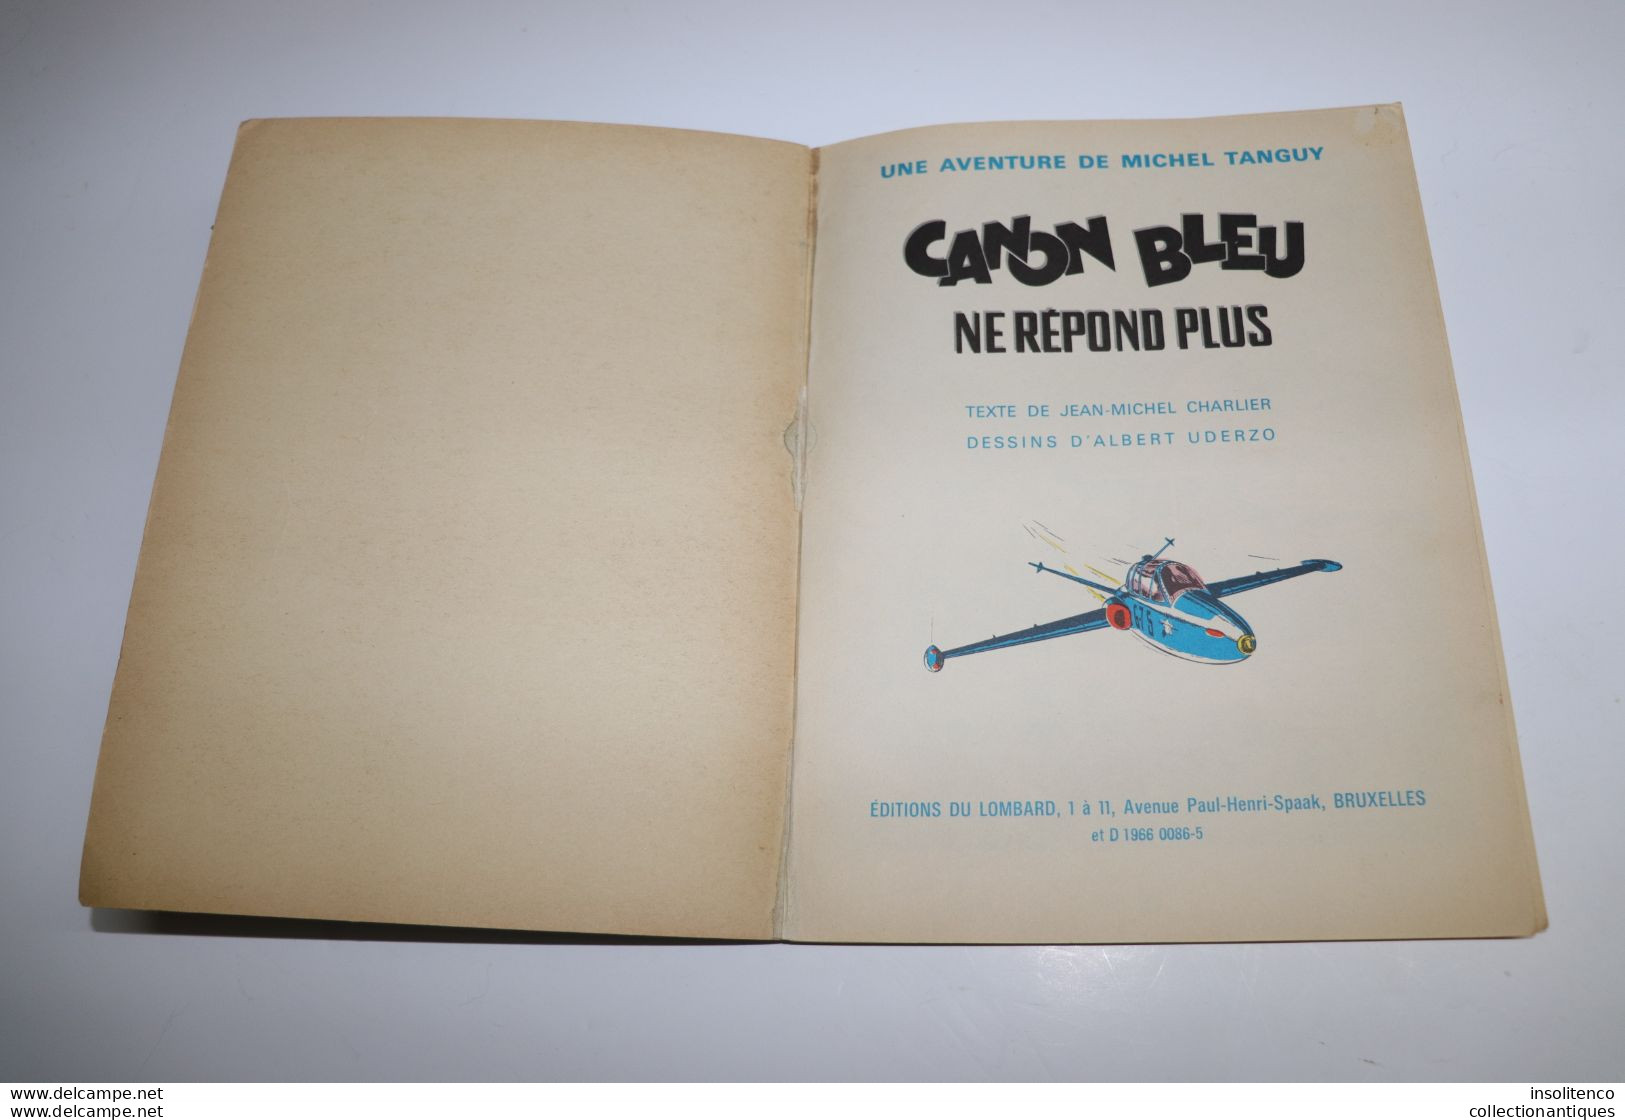 Charlier Et Uderzo - T6 - Une Aventure De Michel Tanguy - Canon Bleu Ne Répond Plus - EO 10/1966 - Dargaud - 46 Pages - Tanguy Et Laverdure